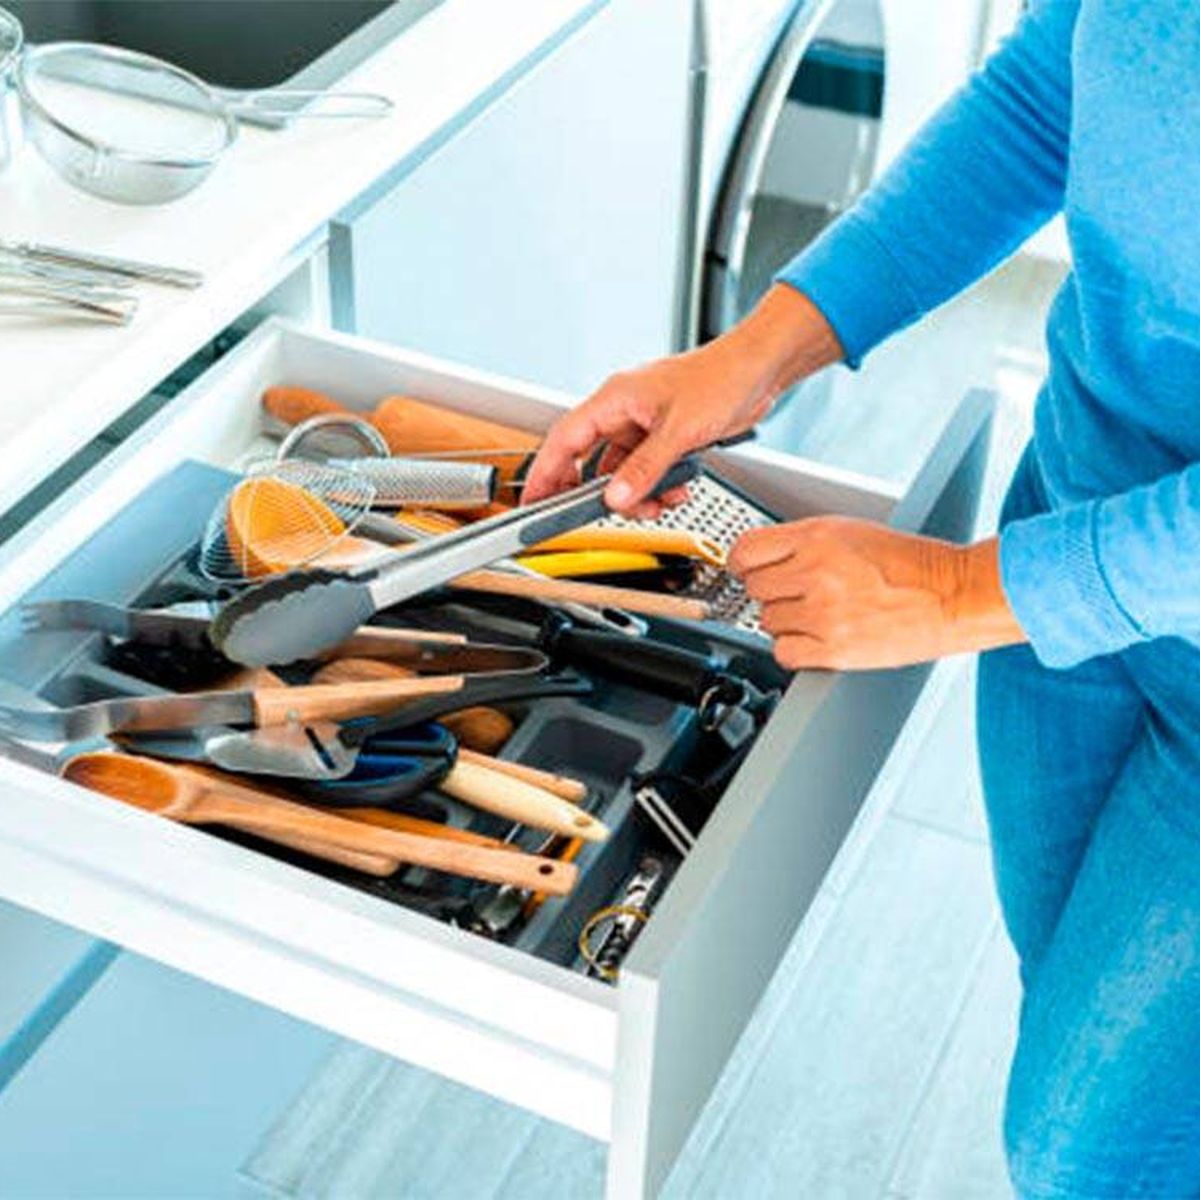 Los utensilios de cocina que debes evitar guardar en los cajones